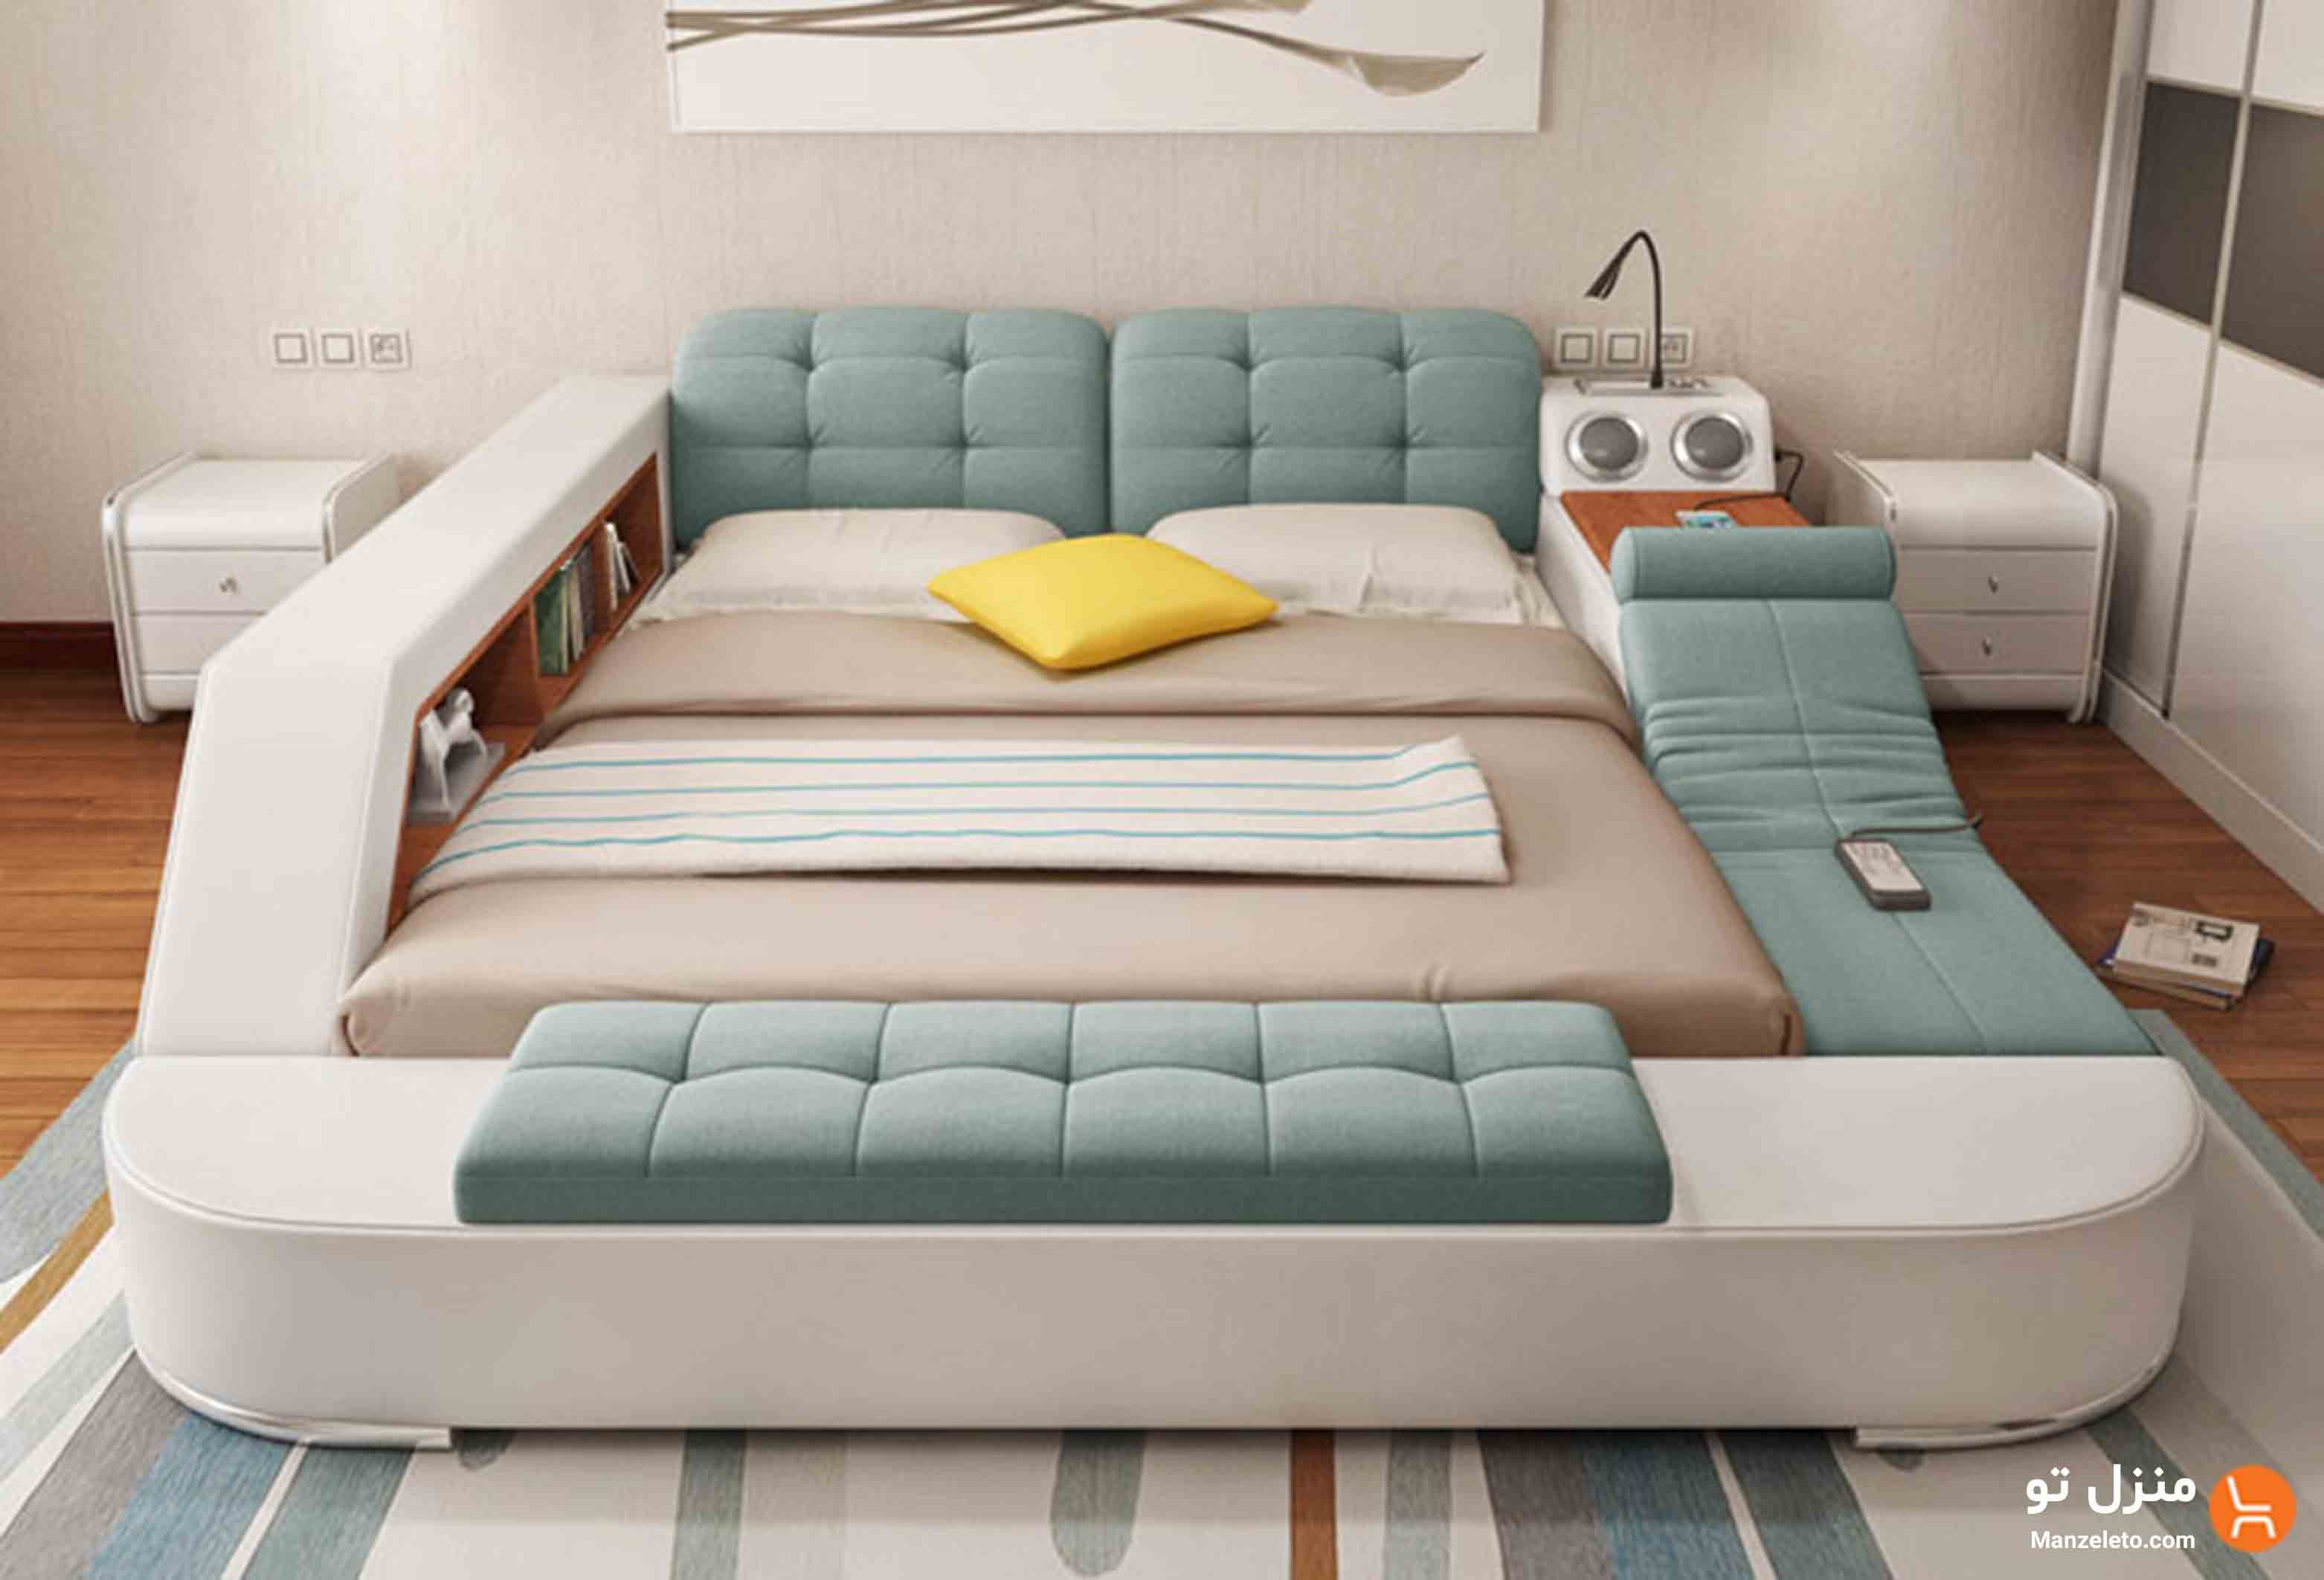 Купить спальные большие диваны. Многофункциональная кровать Ultimate camas. Многофункциональная кровать Smart Bed азиатская. Кровать многофункциональная Кинг сайз. Кровать татами Аскона.